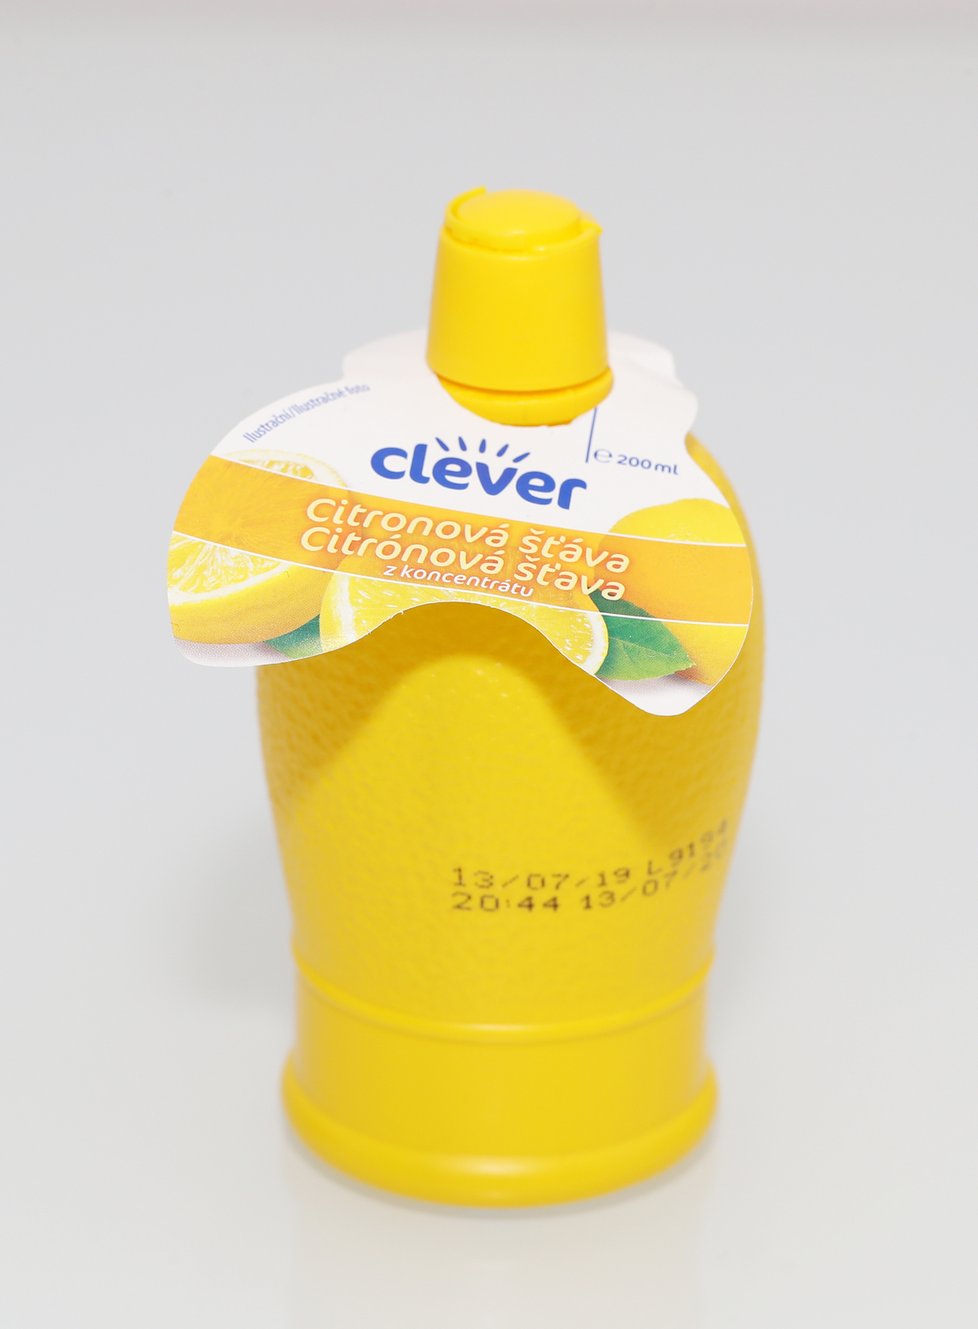 Blesk nechal v laboratoři otestovat 100% citronové šťávy